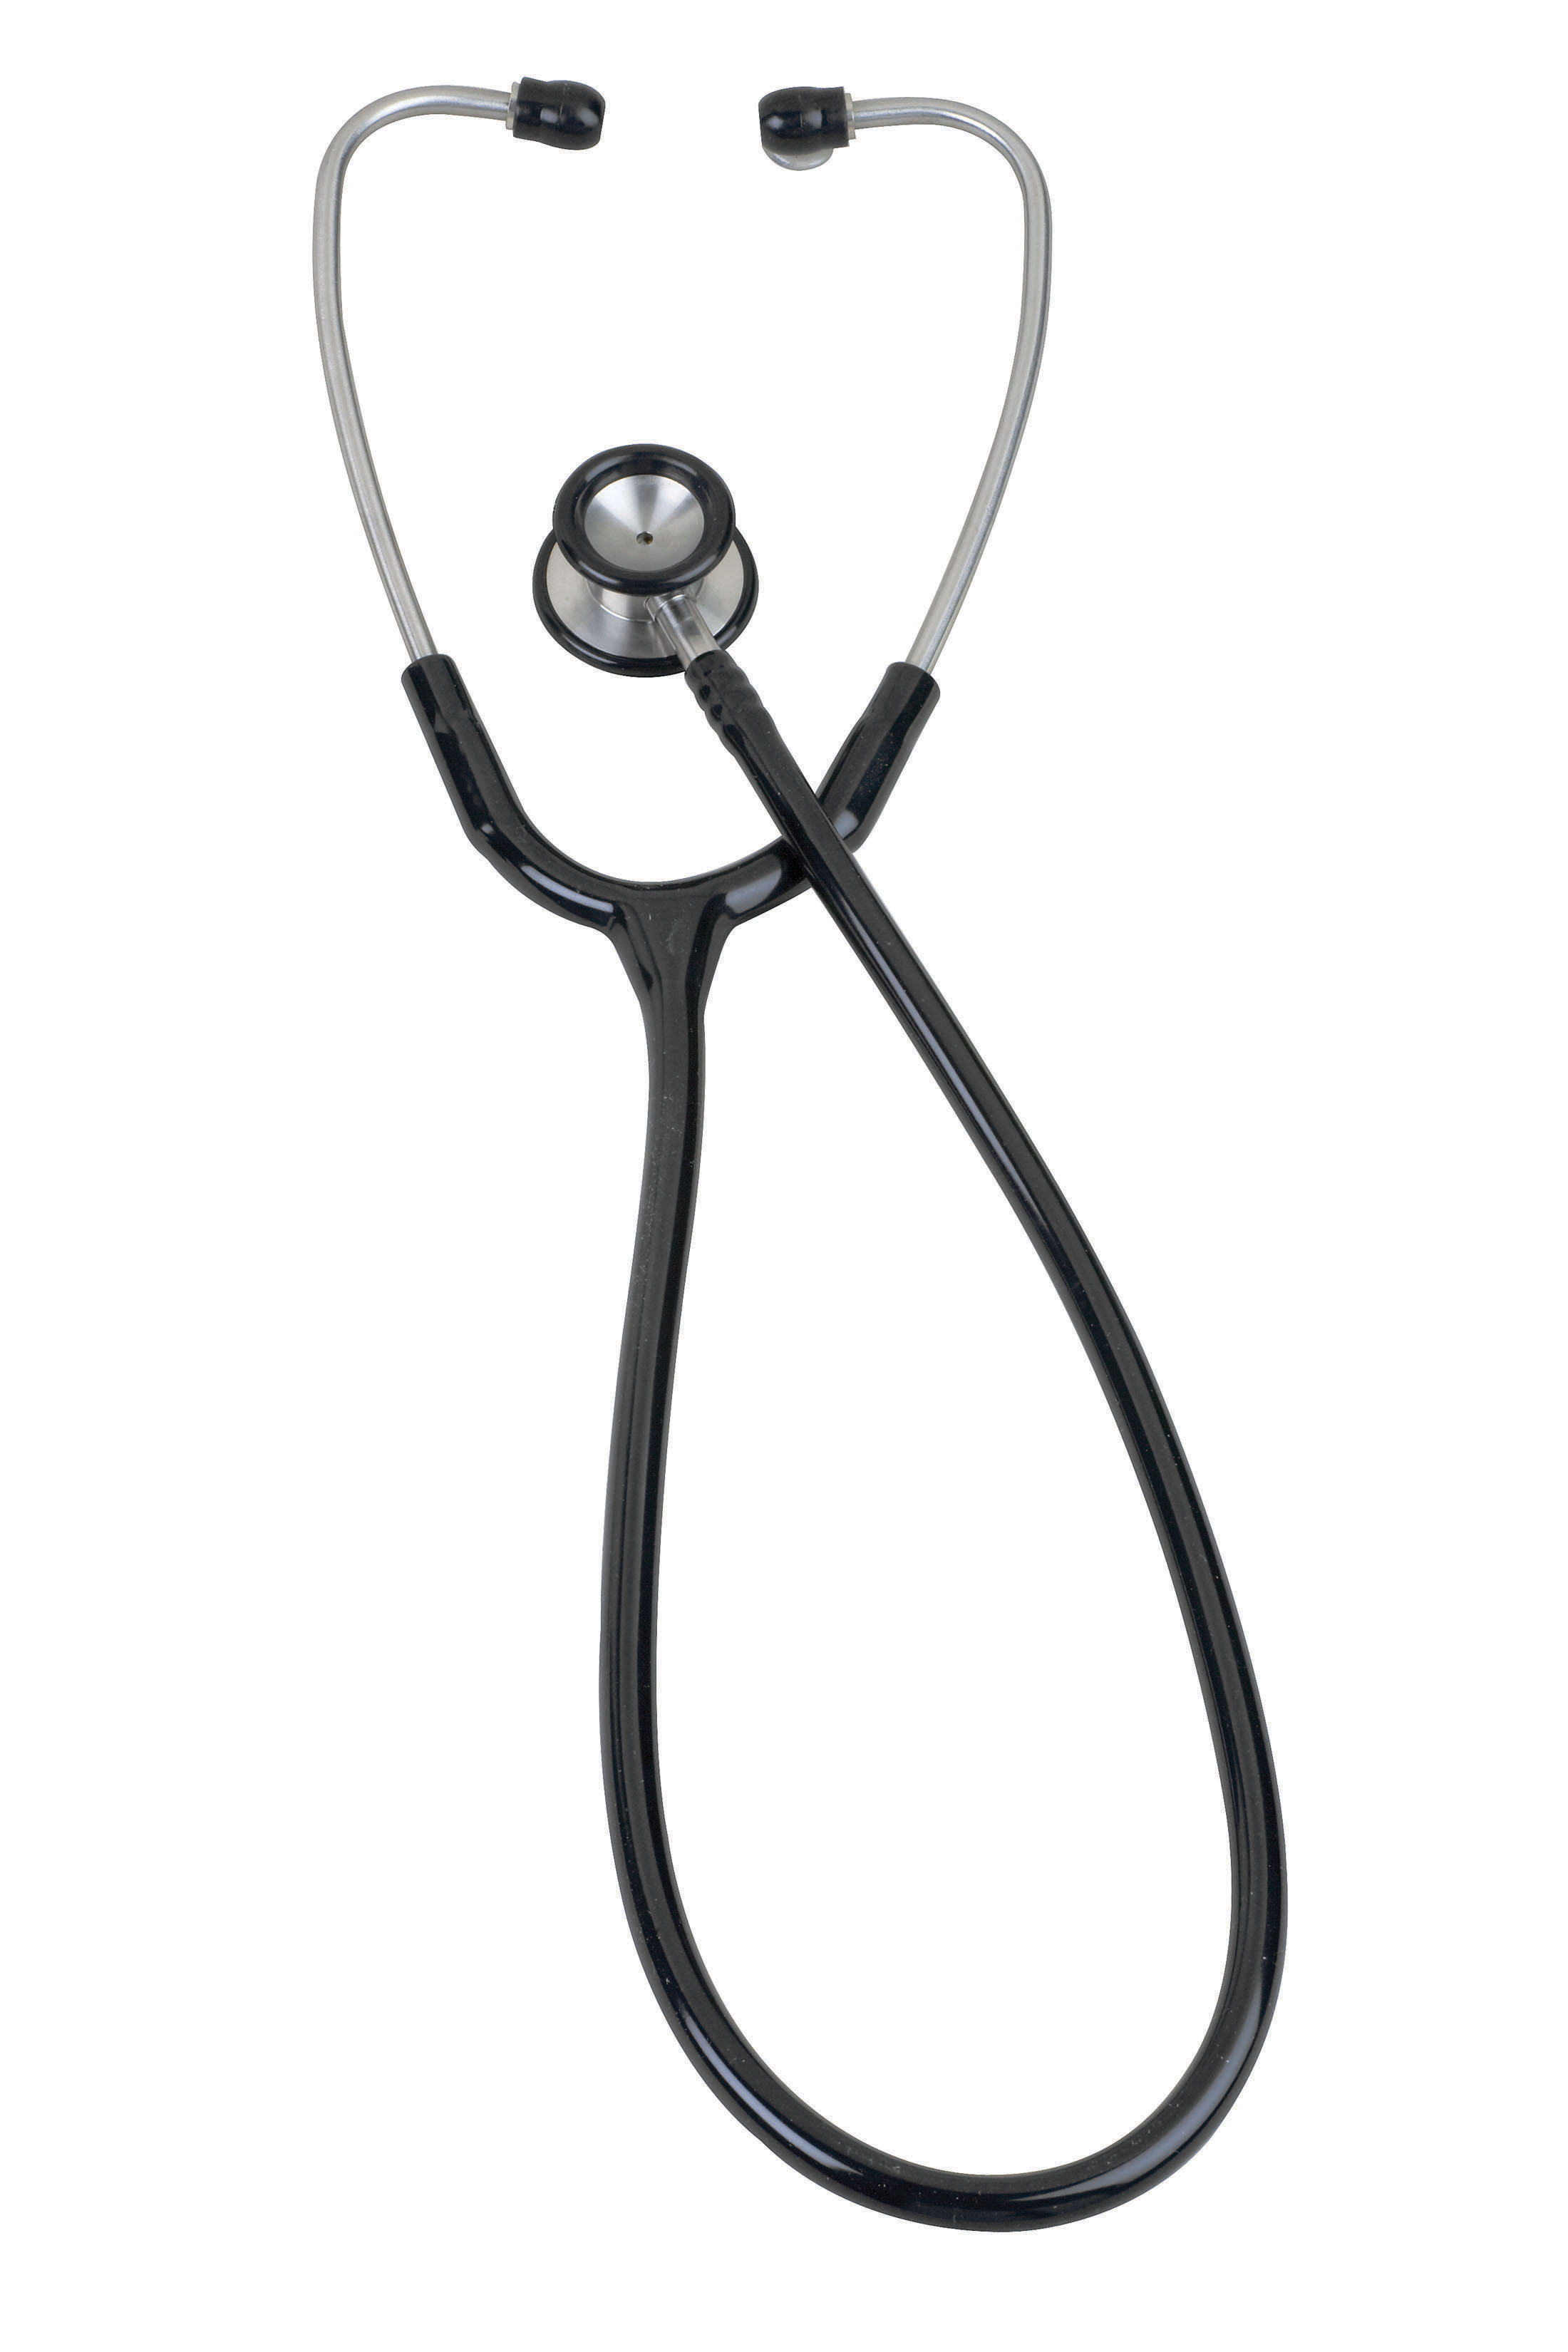 pinnacle-series-stainless-steel-pediatric-stethoscope-05-10601-veridian-3.jpg